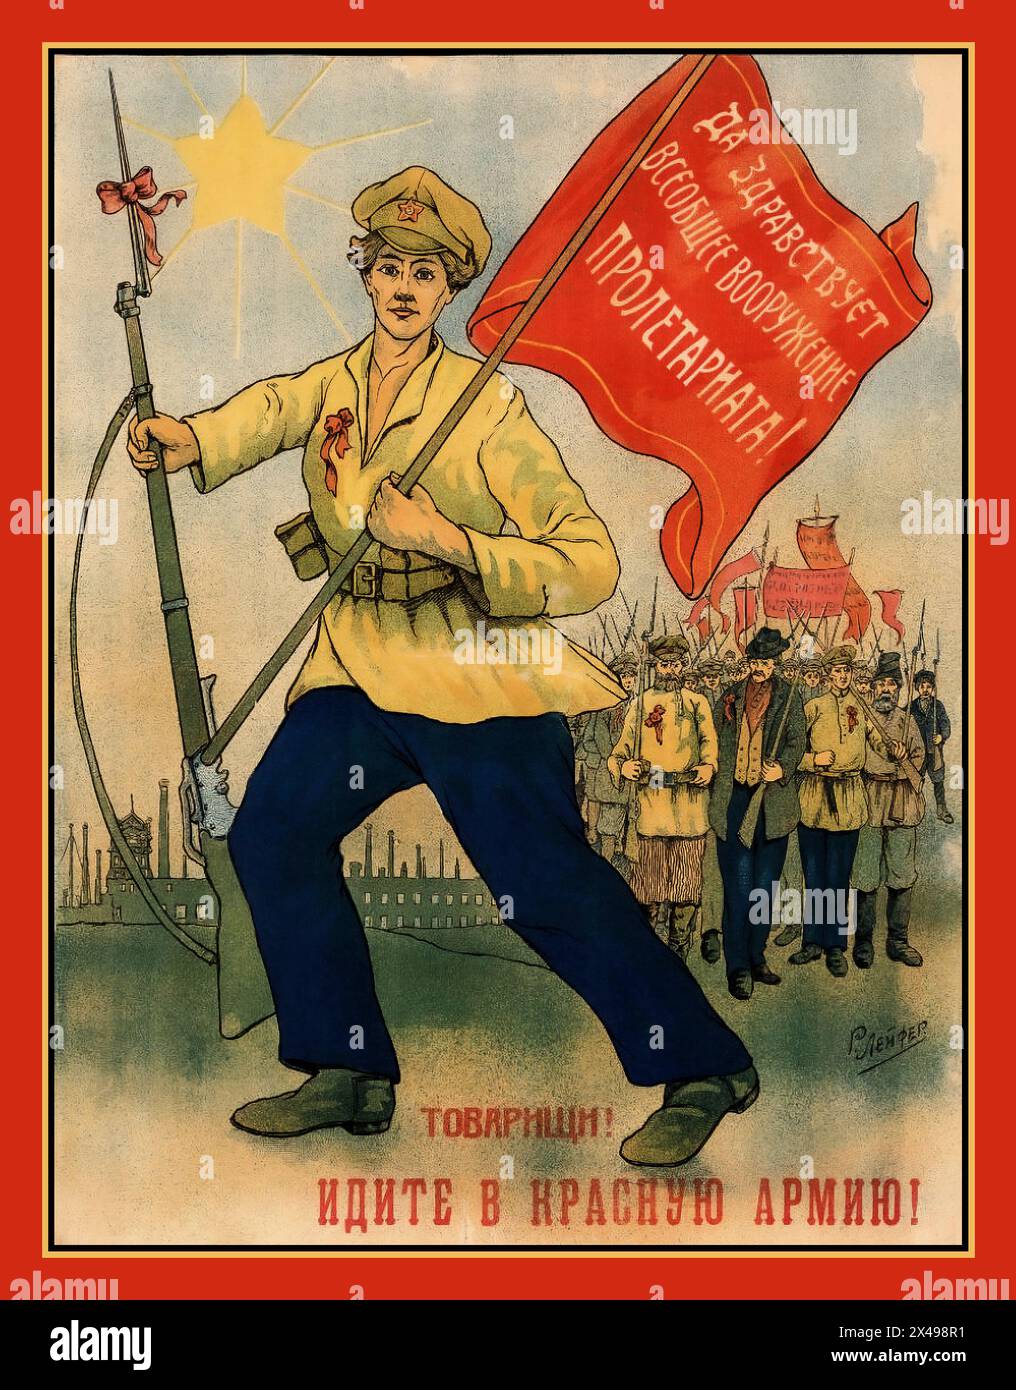 RÉVOLUTION russe c1917 recrutement Révolution affiche mettant en vedette un membre féminin de l'Armée rouge, portant un ruban rouge de révolution, portant une bannière avec «VIVE L'ARMEMENT UNIVERSEL DU PROLÉTARIAT» «les camarades vont à L'ARMÉE ROUGE» Russie URSS Union soviétique Banque D'Images